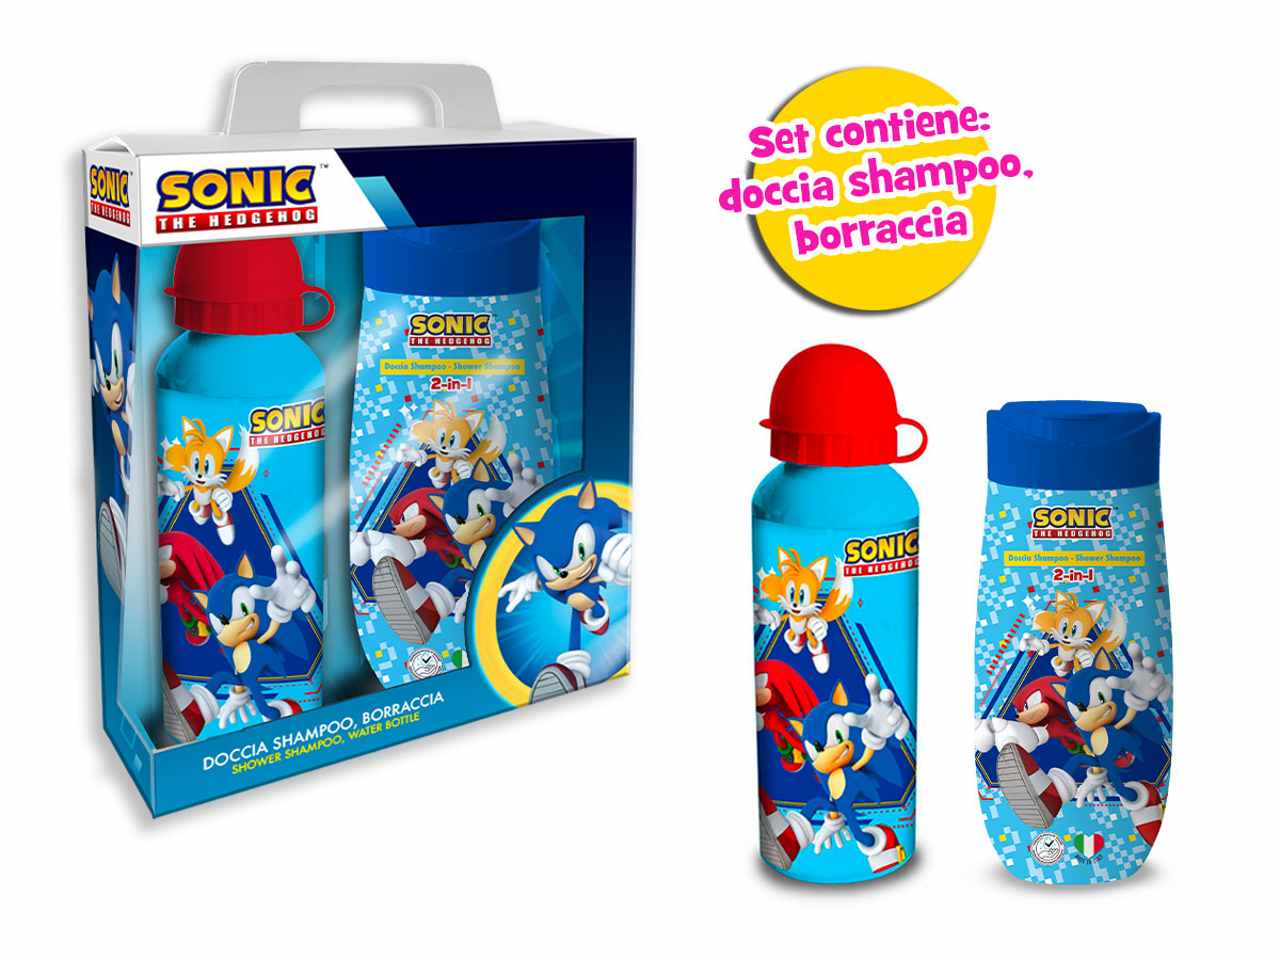 Sonic set doccia shampoo con borraccia